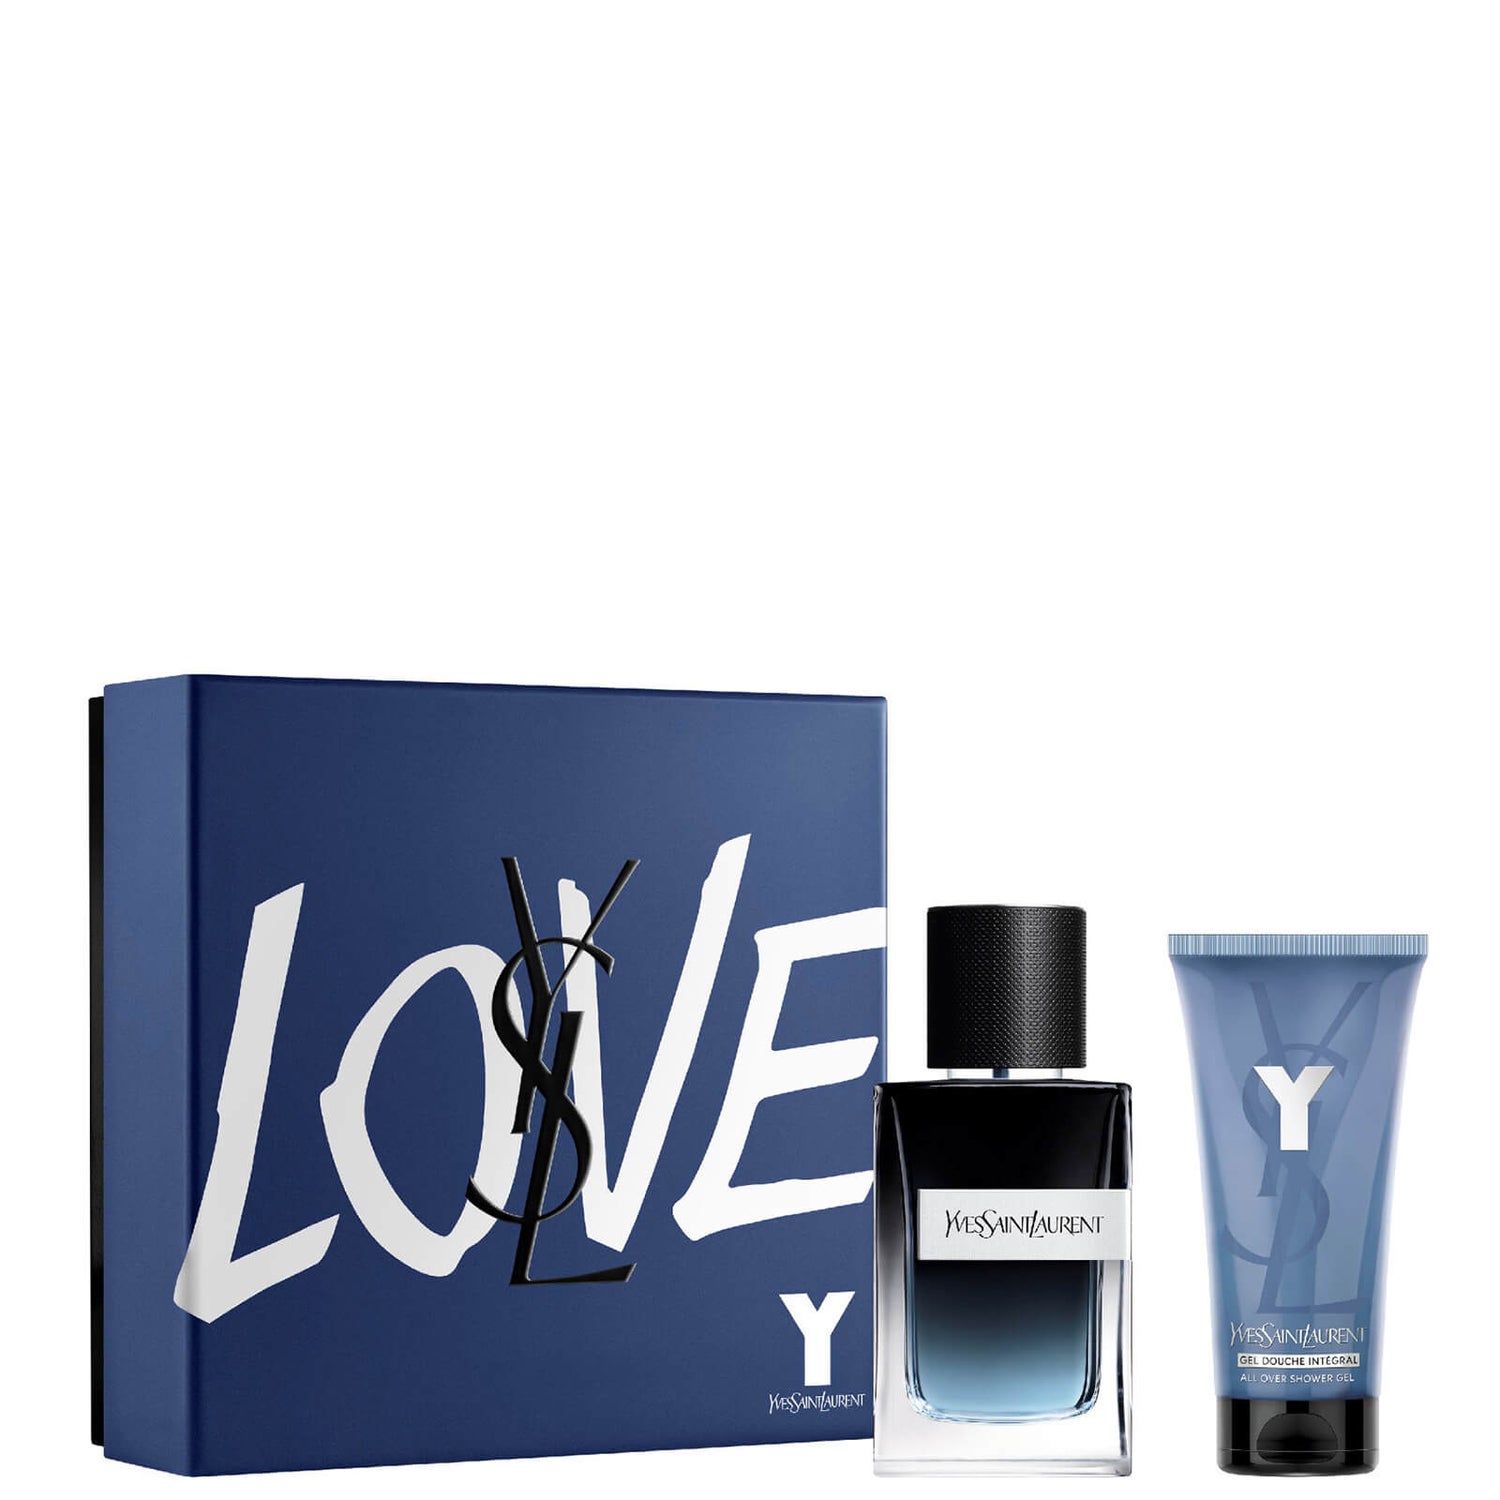 Yves Saint Laurent Y Eau de Parfum Body Gift Set